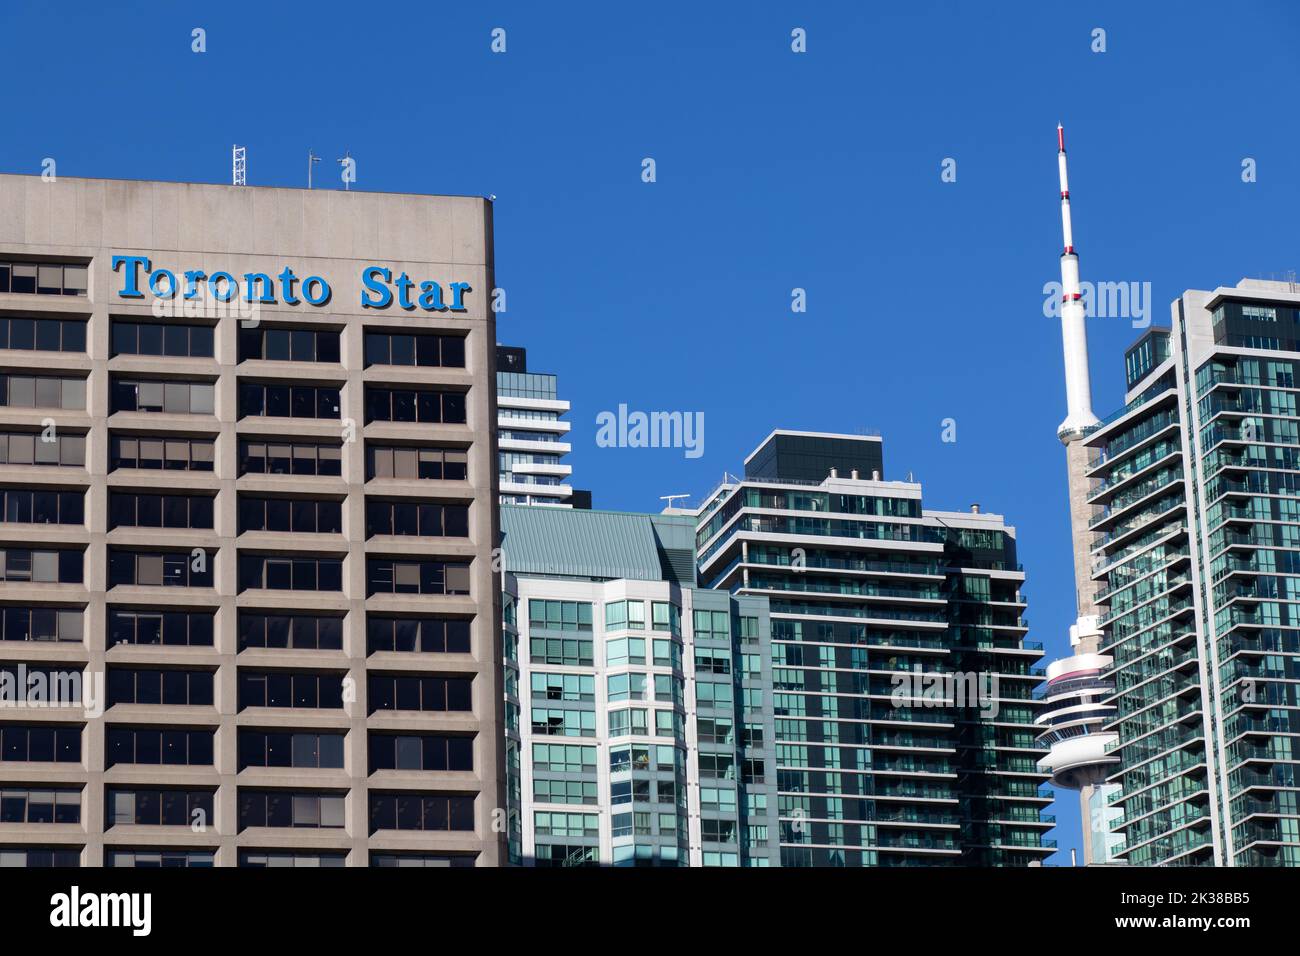 Le bureau du Toronto Star, le plus grand quotidien du Canada par circulation, est vu par temps clair, la Tour CN étant vue en arrière-plan. Banque D'Images